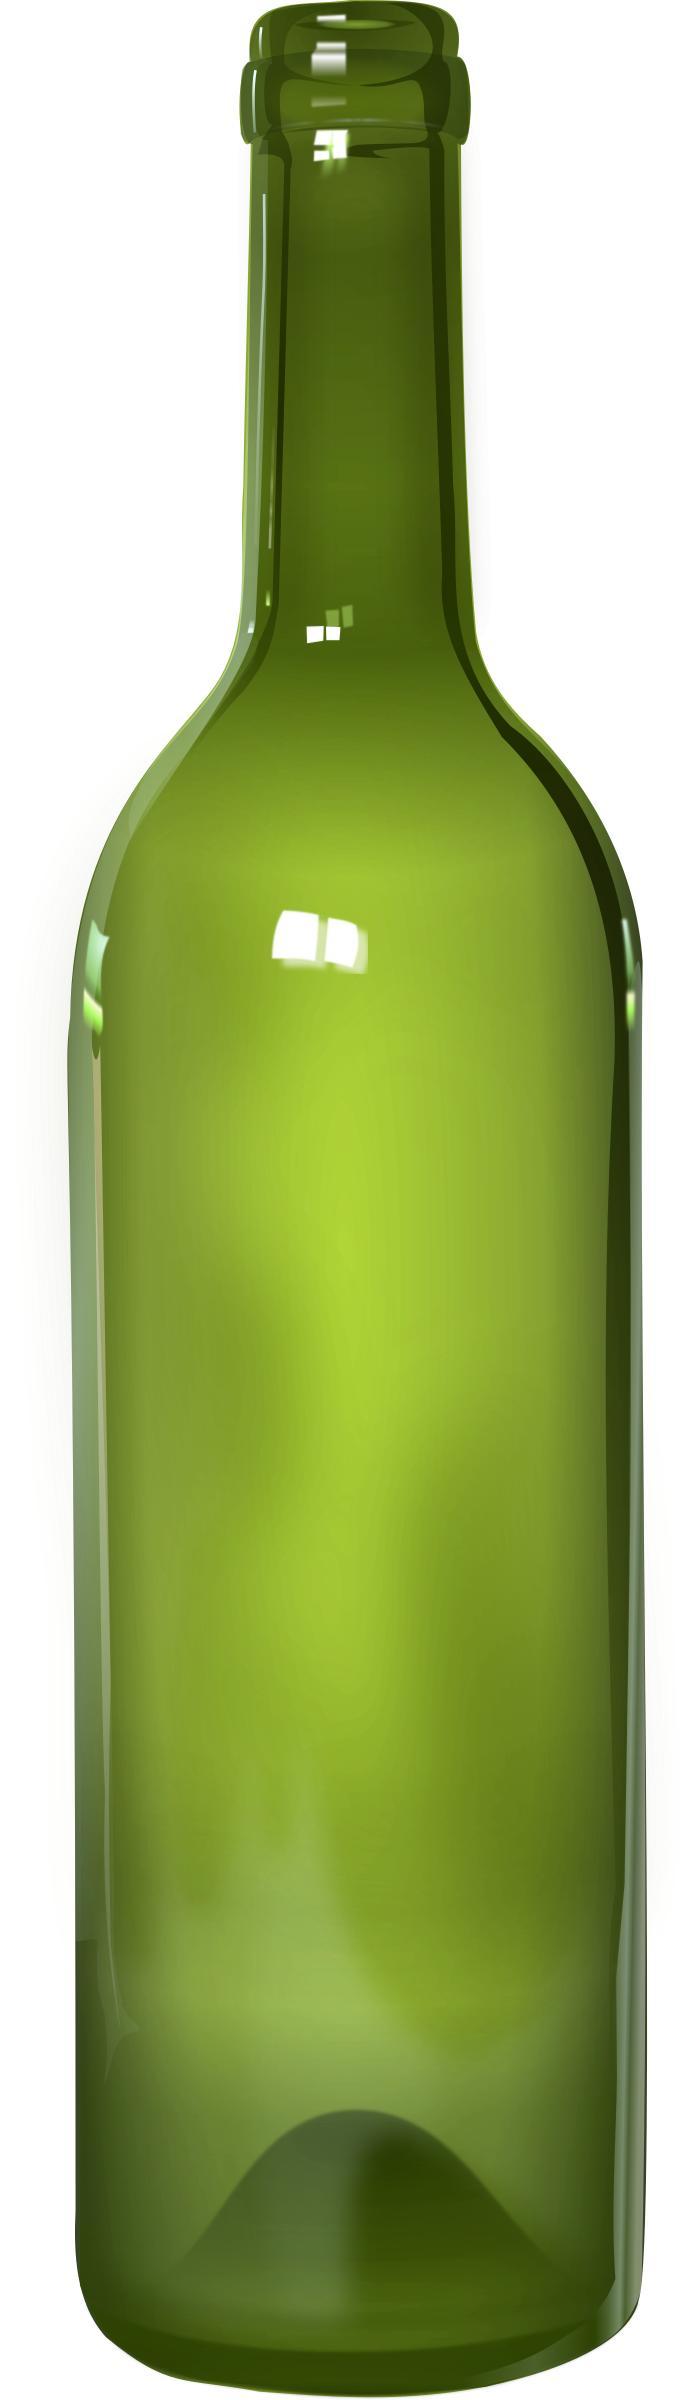 Bottle - detailed png transparent